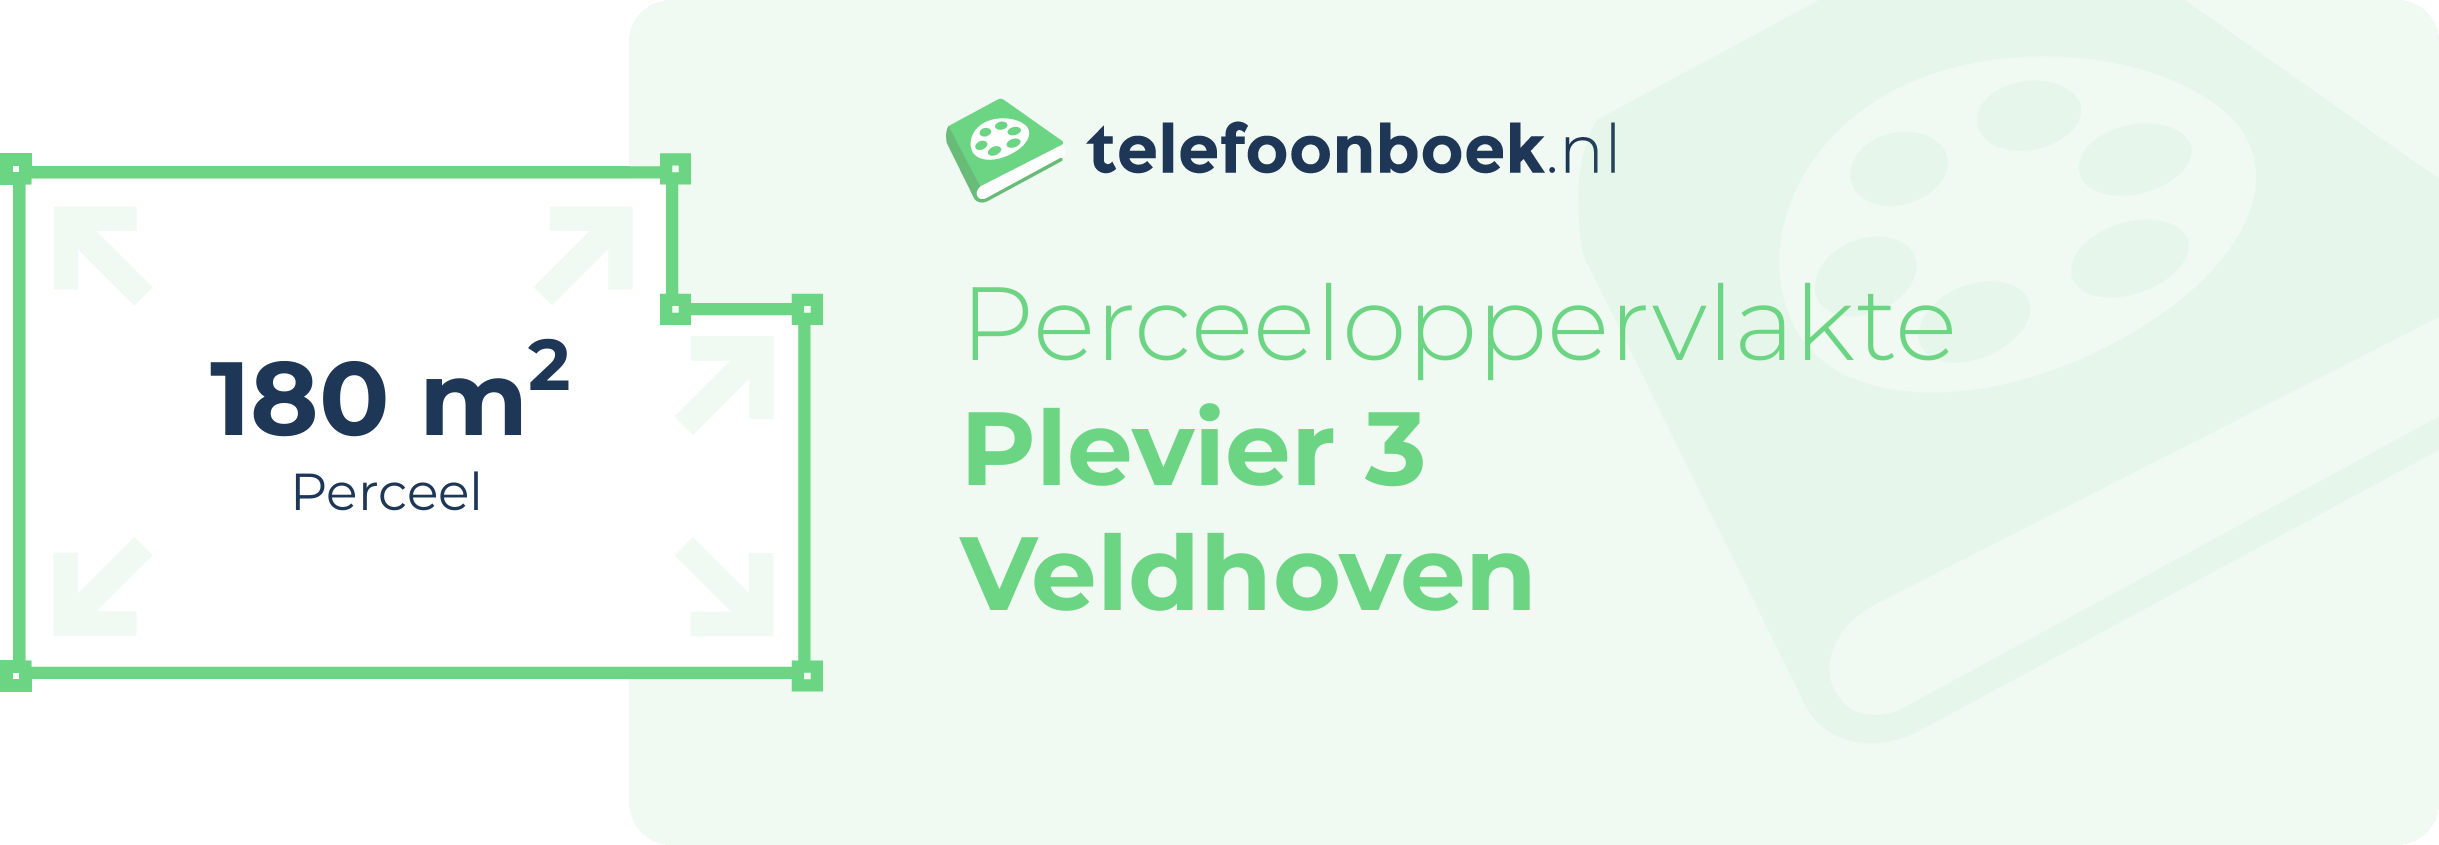 Perceeloppervlakte Plevier 3 Veldhoven